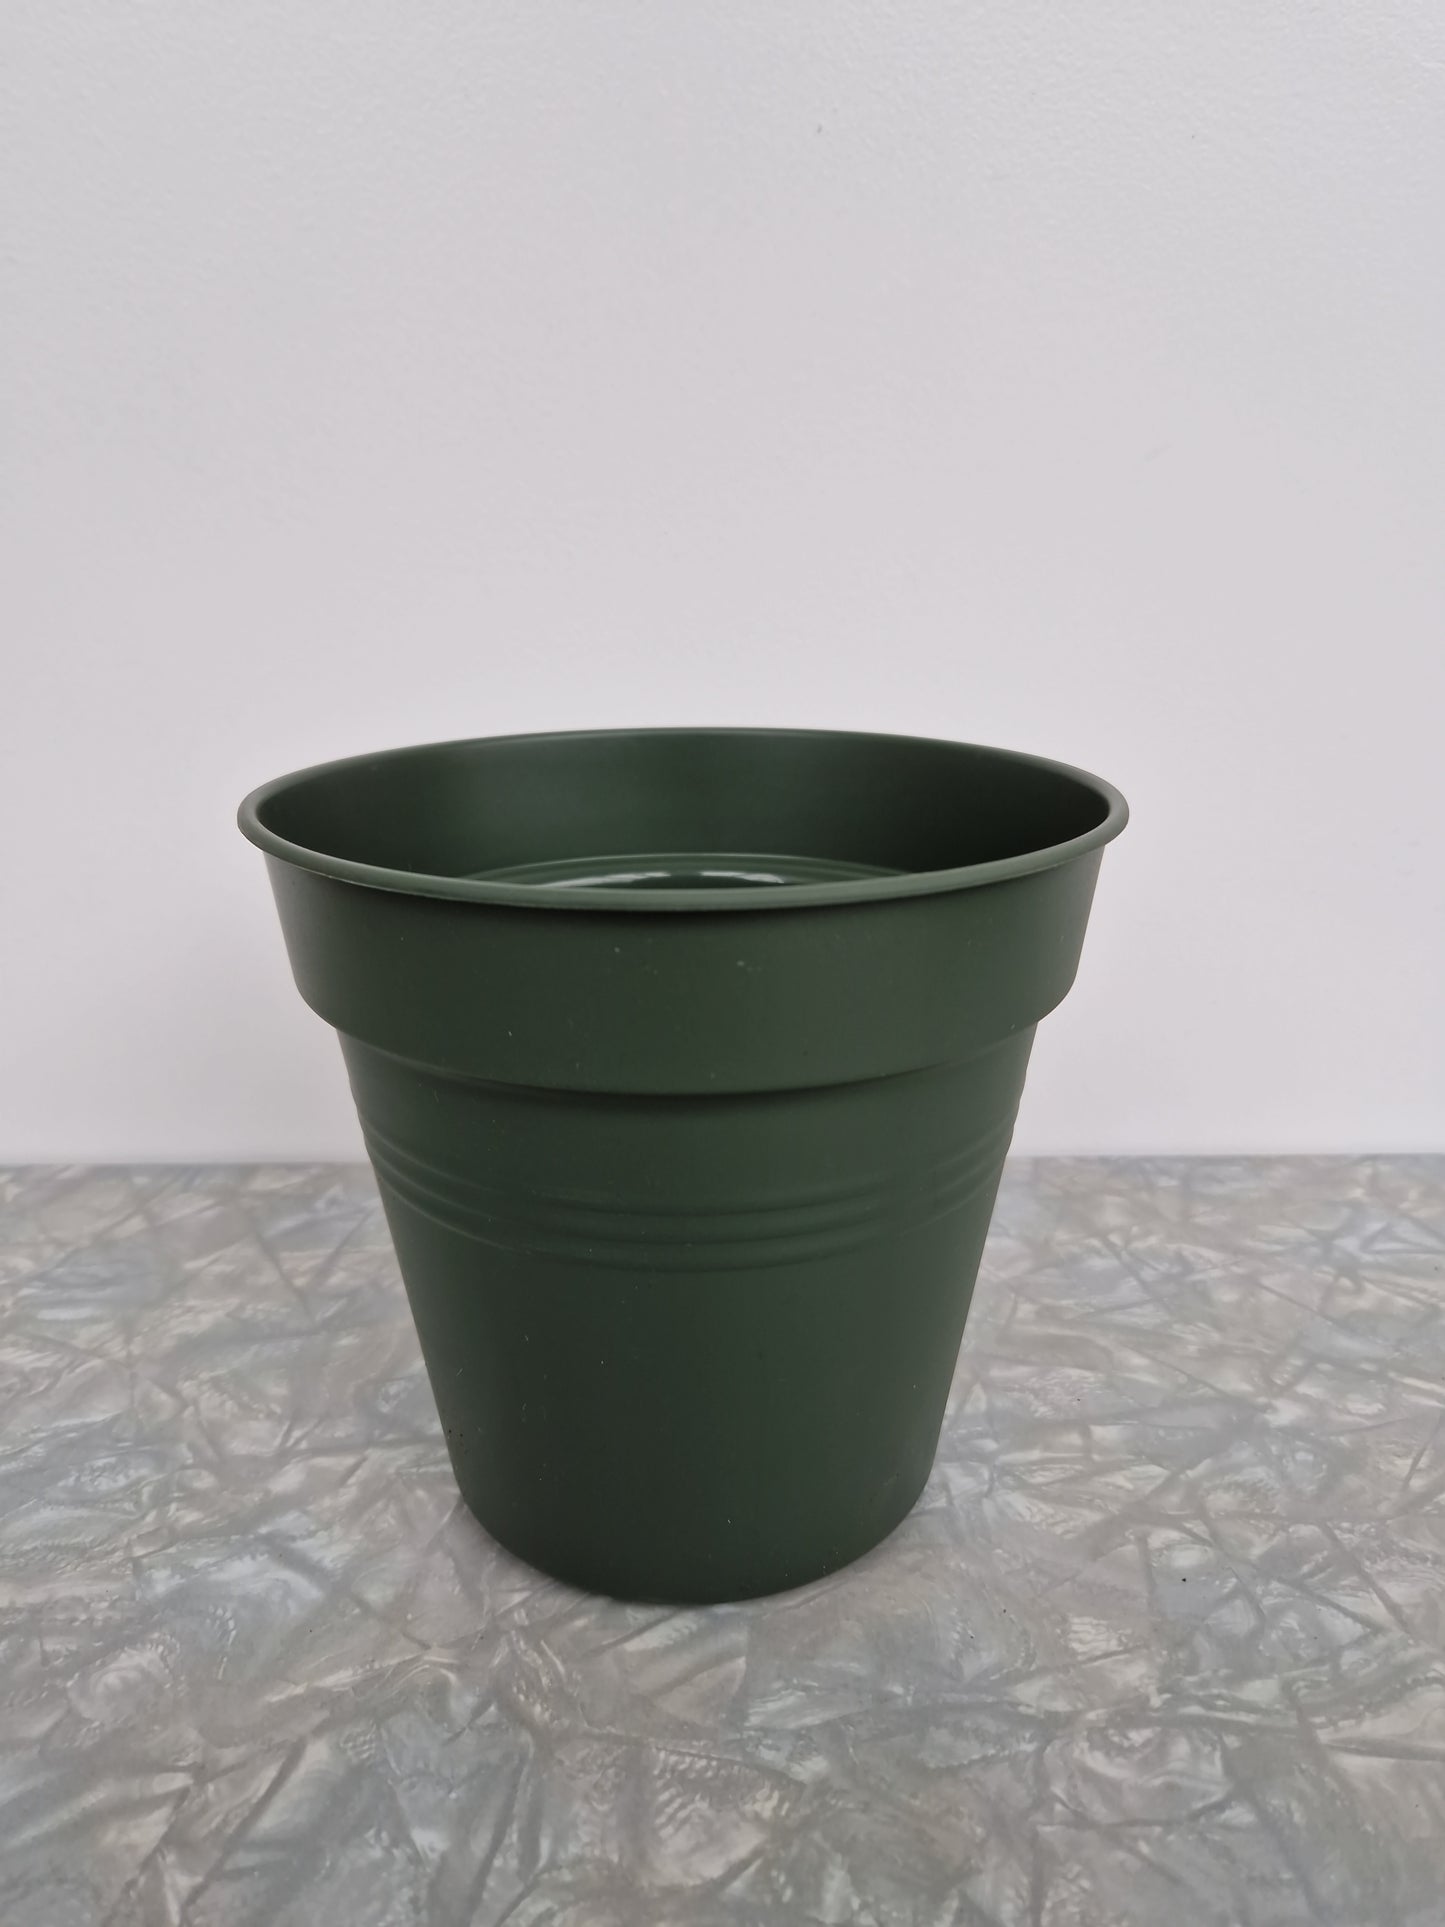 Plast potte Elho grønn  19 cm